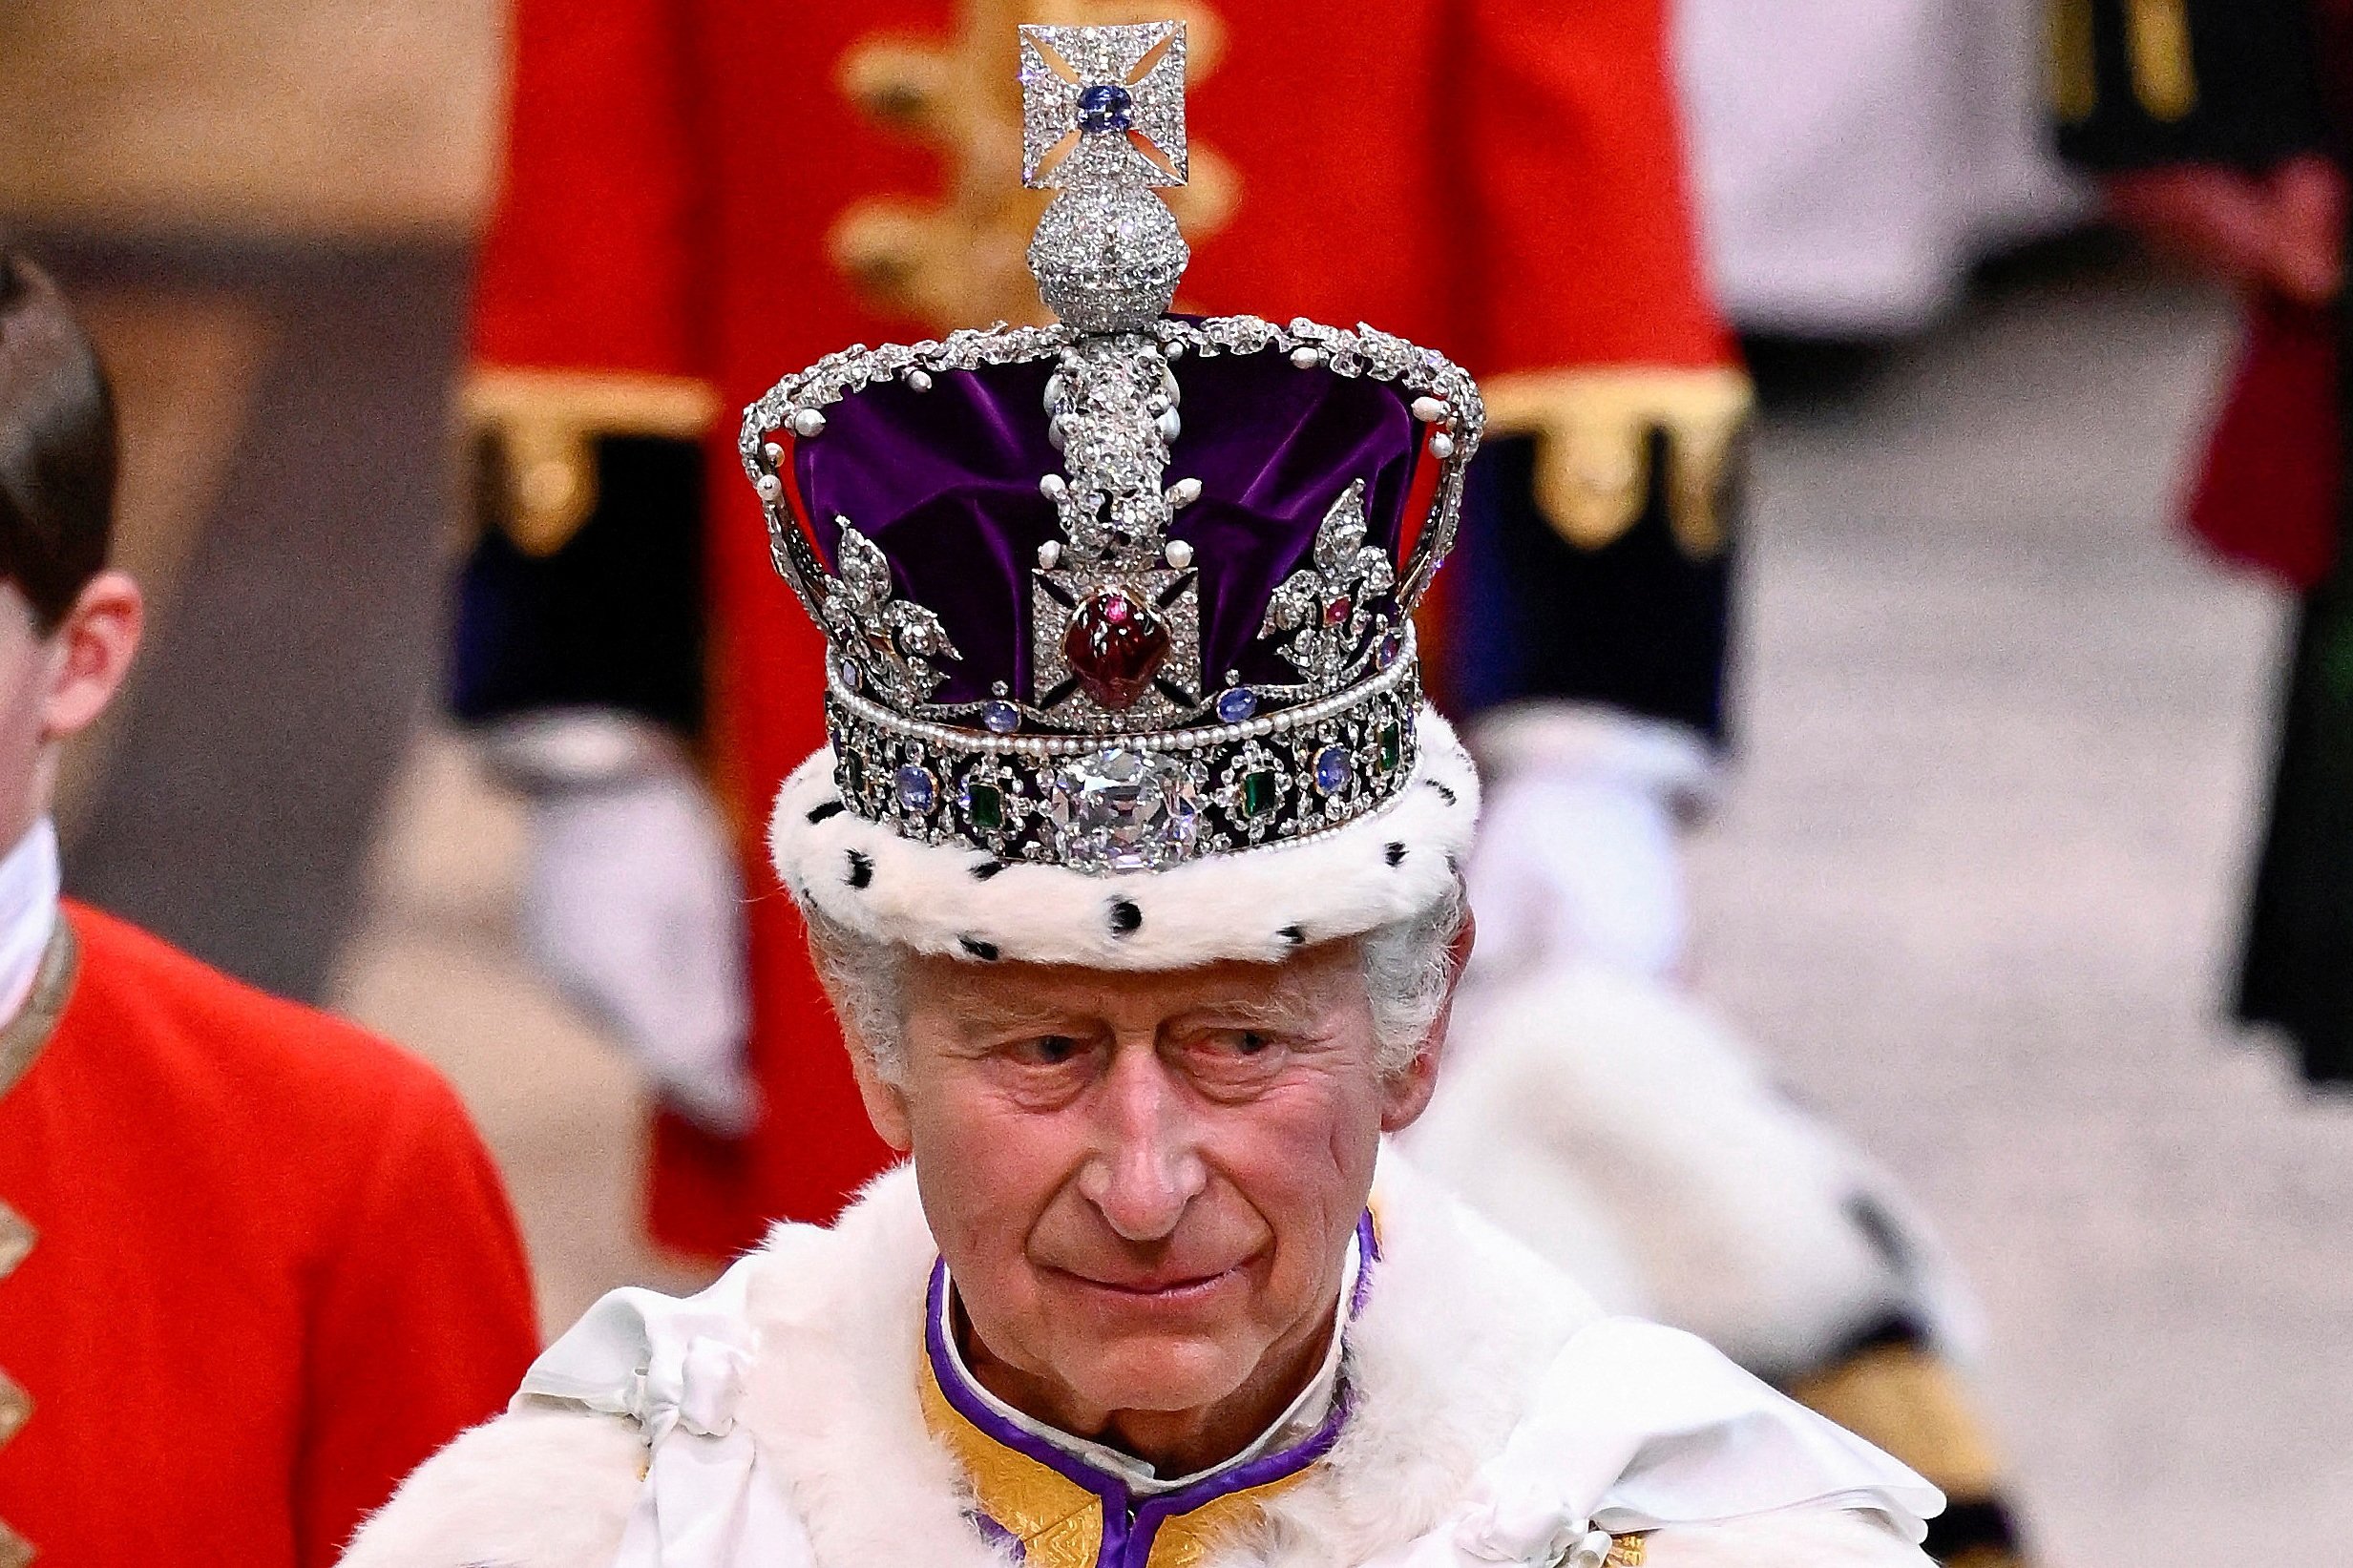 Charles tornou-se rei logo após a morte se sua mãe, em setembro, mas a cerimônia  deste sábado finalmente simbolizou a passagem de cargo da família real britânica